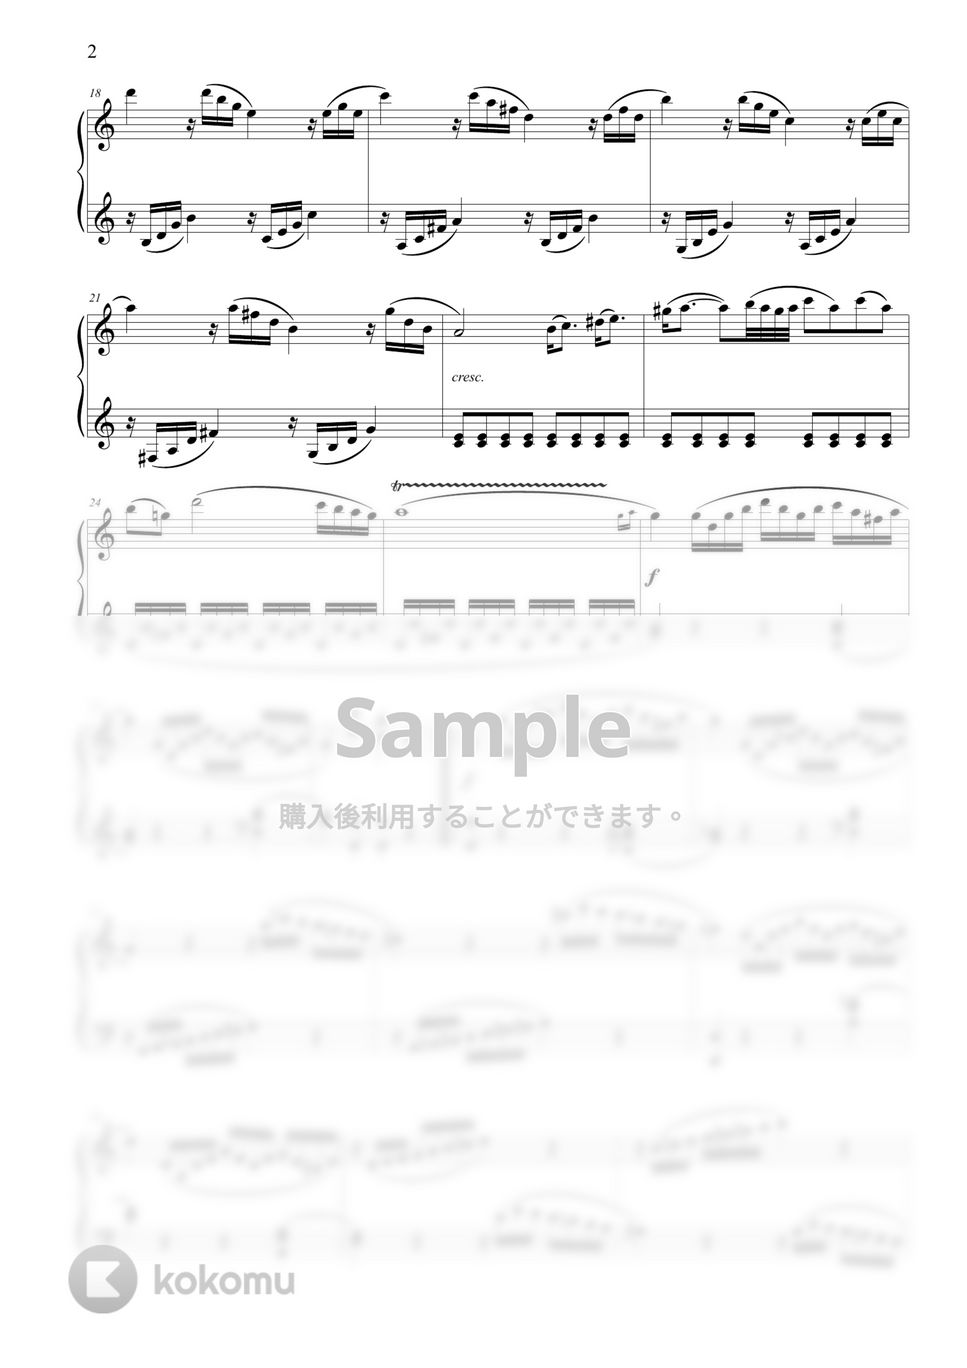 モーツァルト - ピアノソナタNo.16 k.545 ハ長調 1楽章 by ココミュオリジナル